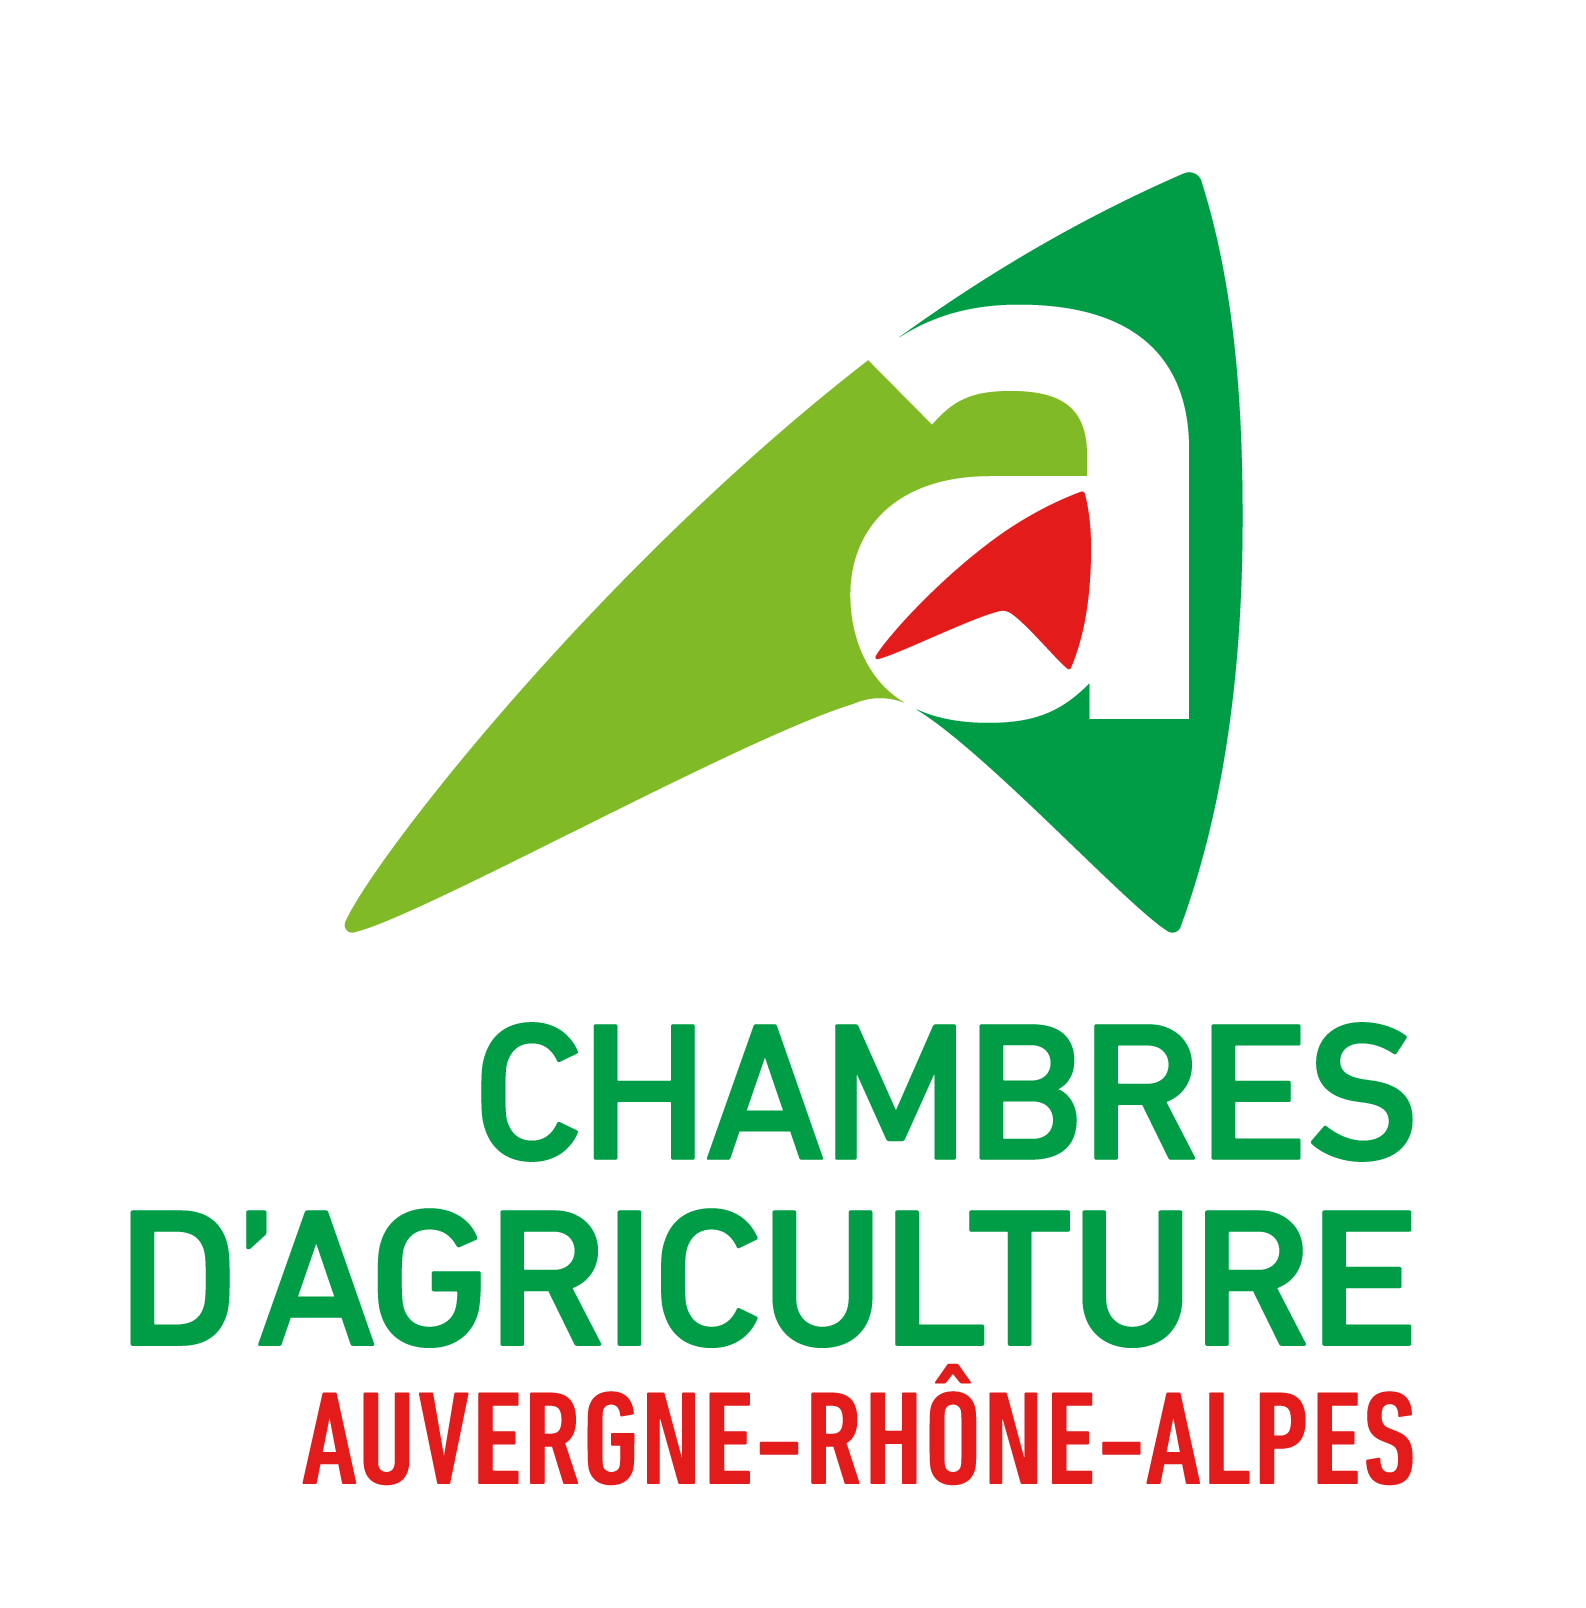 Chambres d'agriculture d'Auvergne-Rhône-Alpes, retour à la page d'accueil